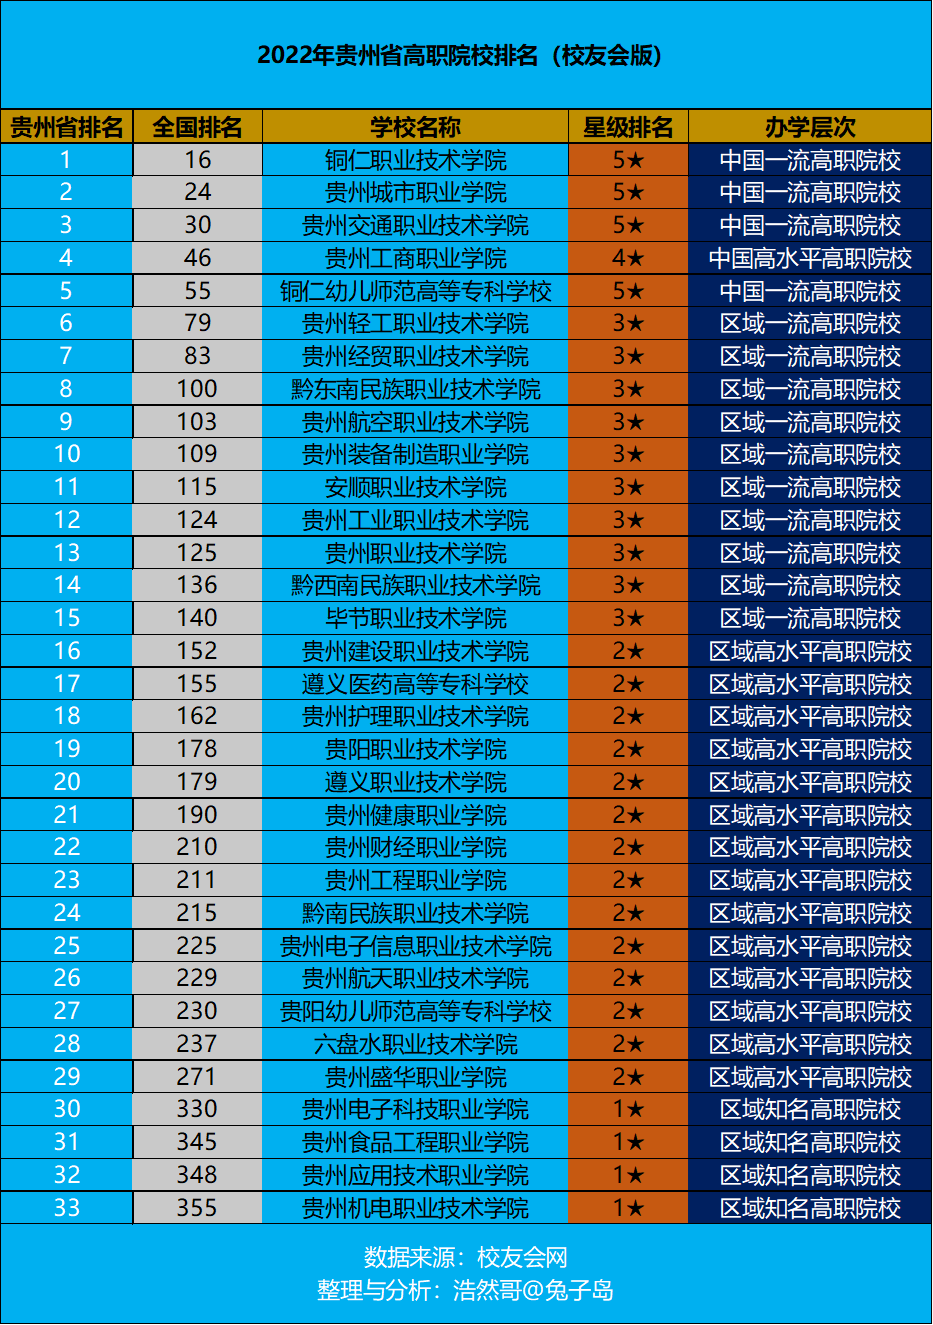 贵州城市职业学院上升一名,排名第二;第一名铜仁职业技术学院继续领跑